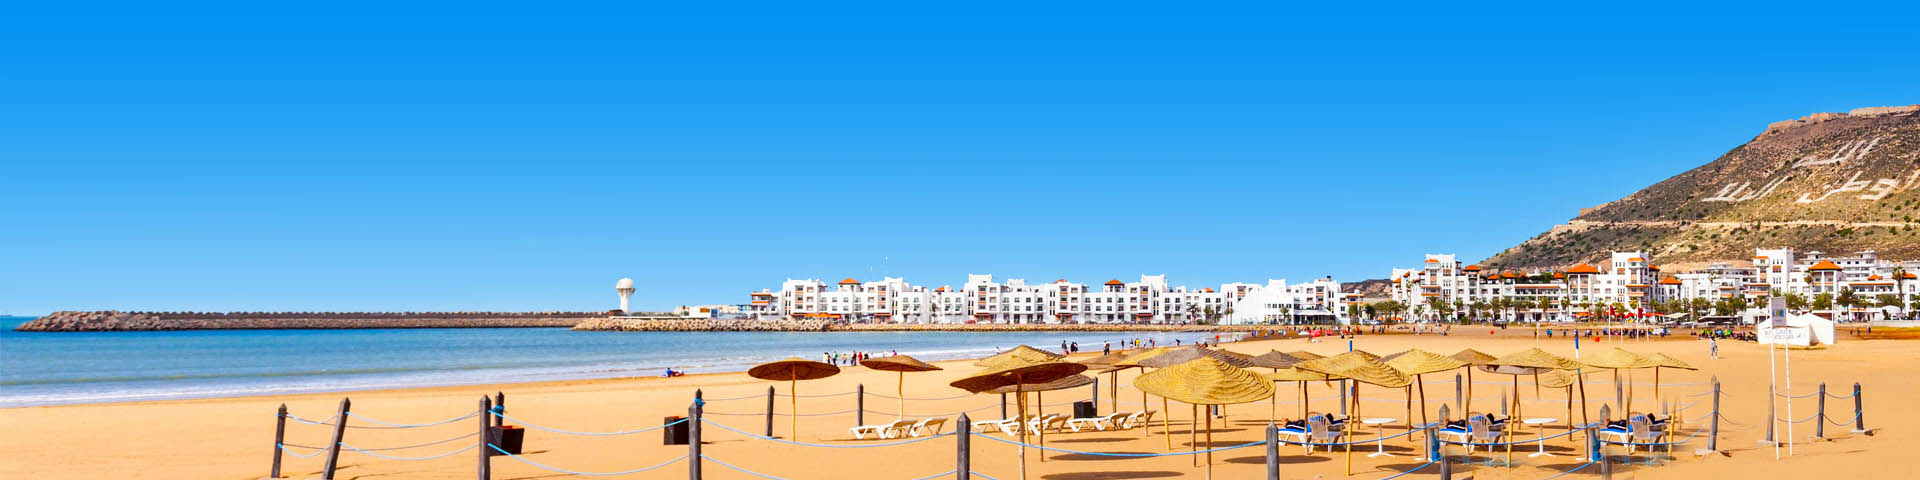 Goudgeel zandstrand met parasols, de zee en witte huizen op de achtergrond in Marokko